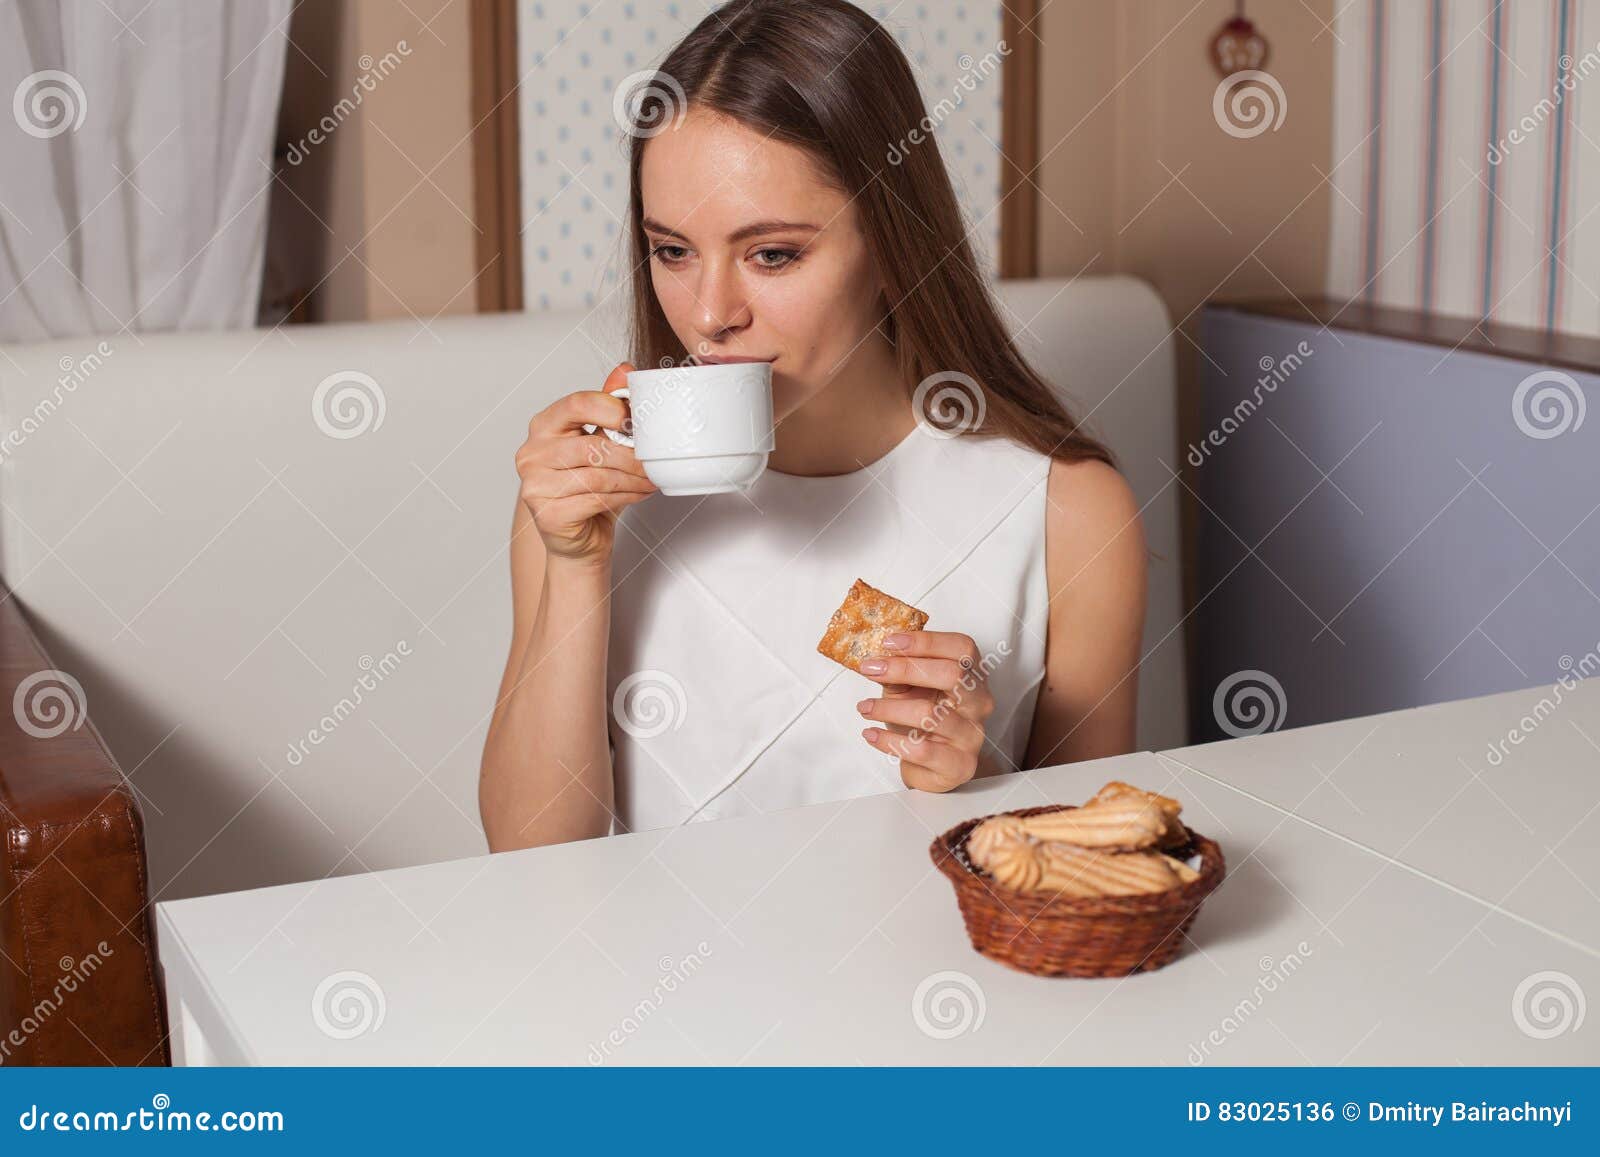 Чай пью с печеньями. Пьет чай с печеньем. Девушка пьет чай с печеньем. Ест печенье с чаем. Компания пьет чай с печеньем.